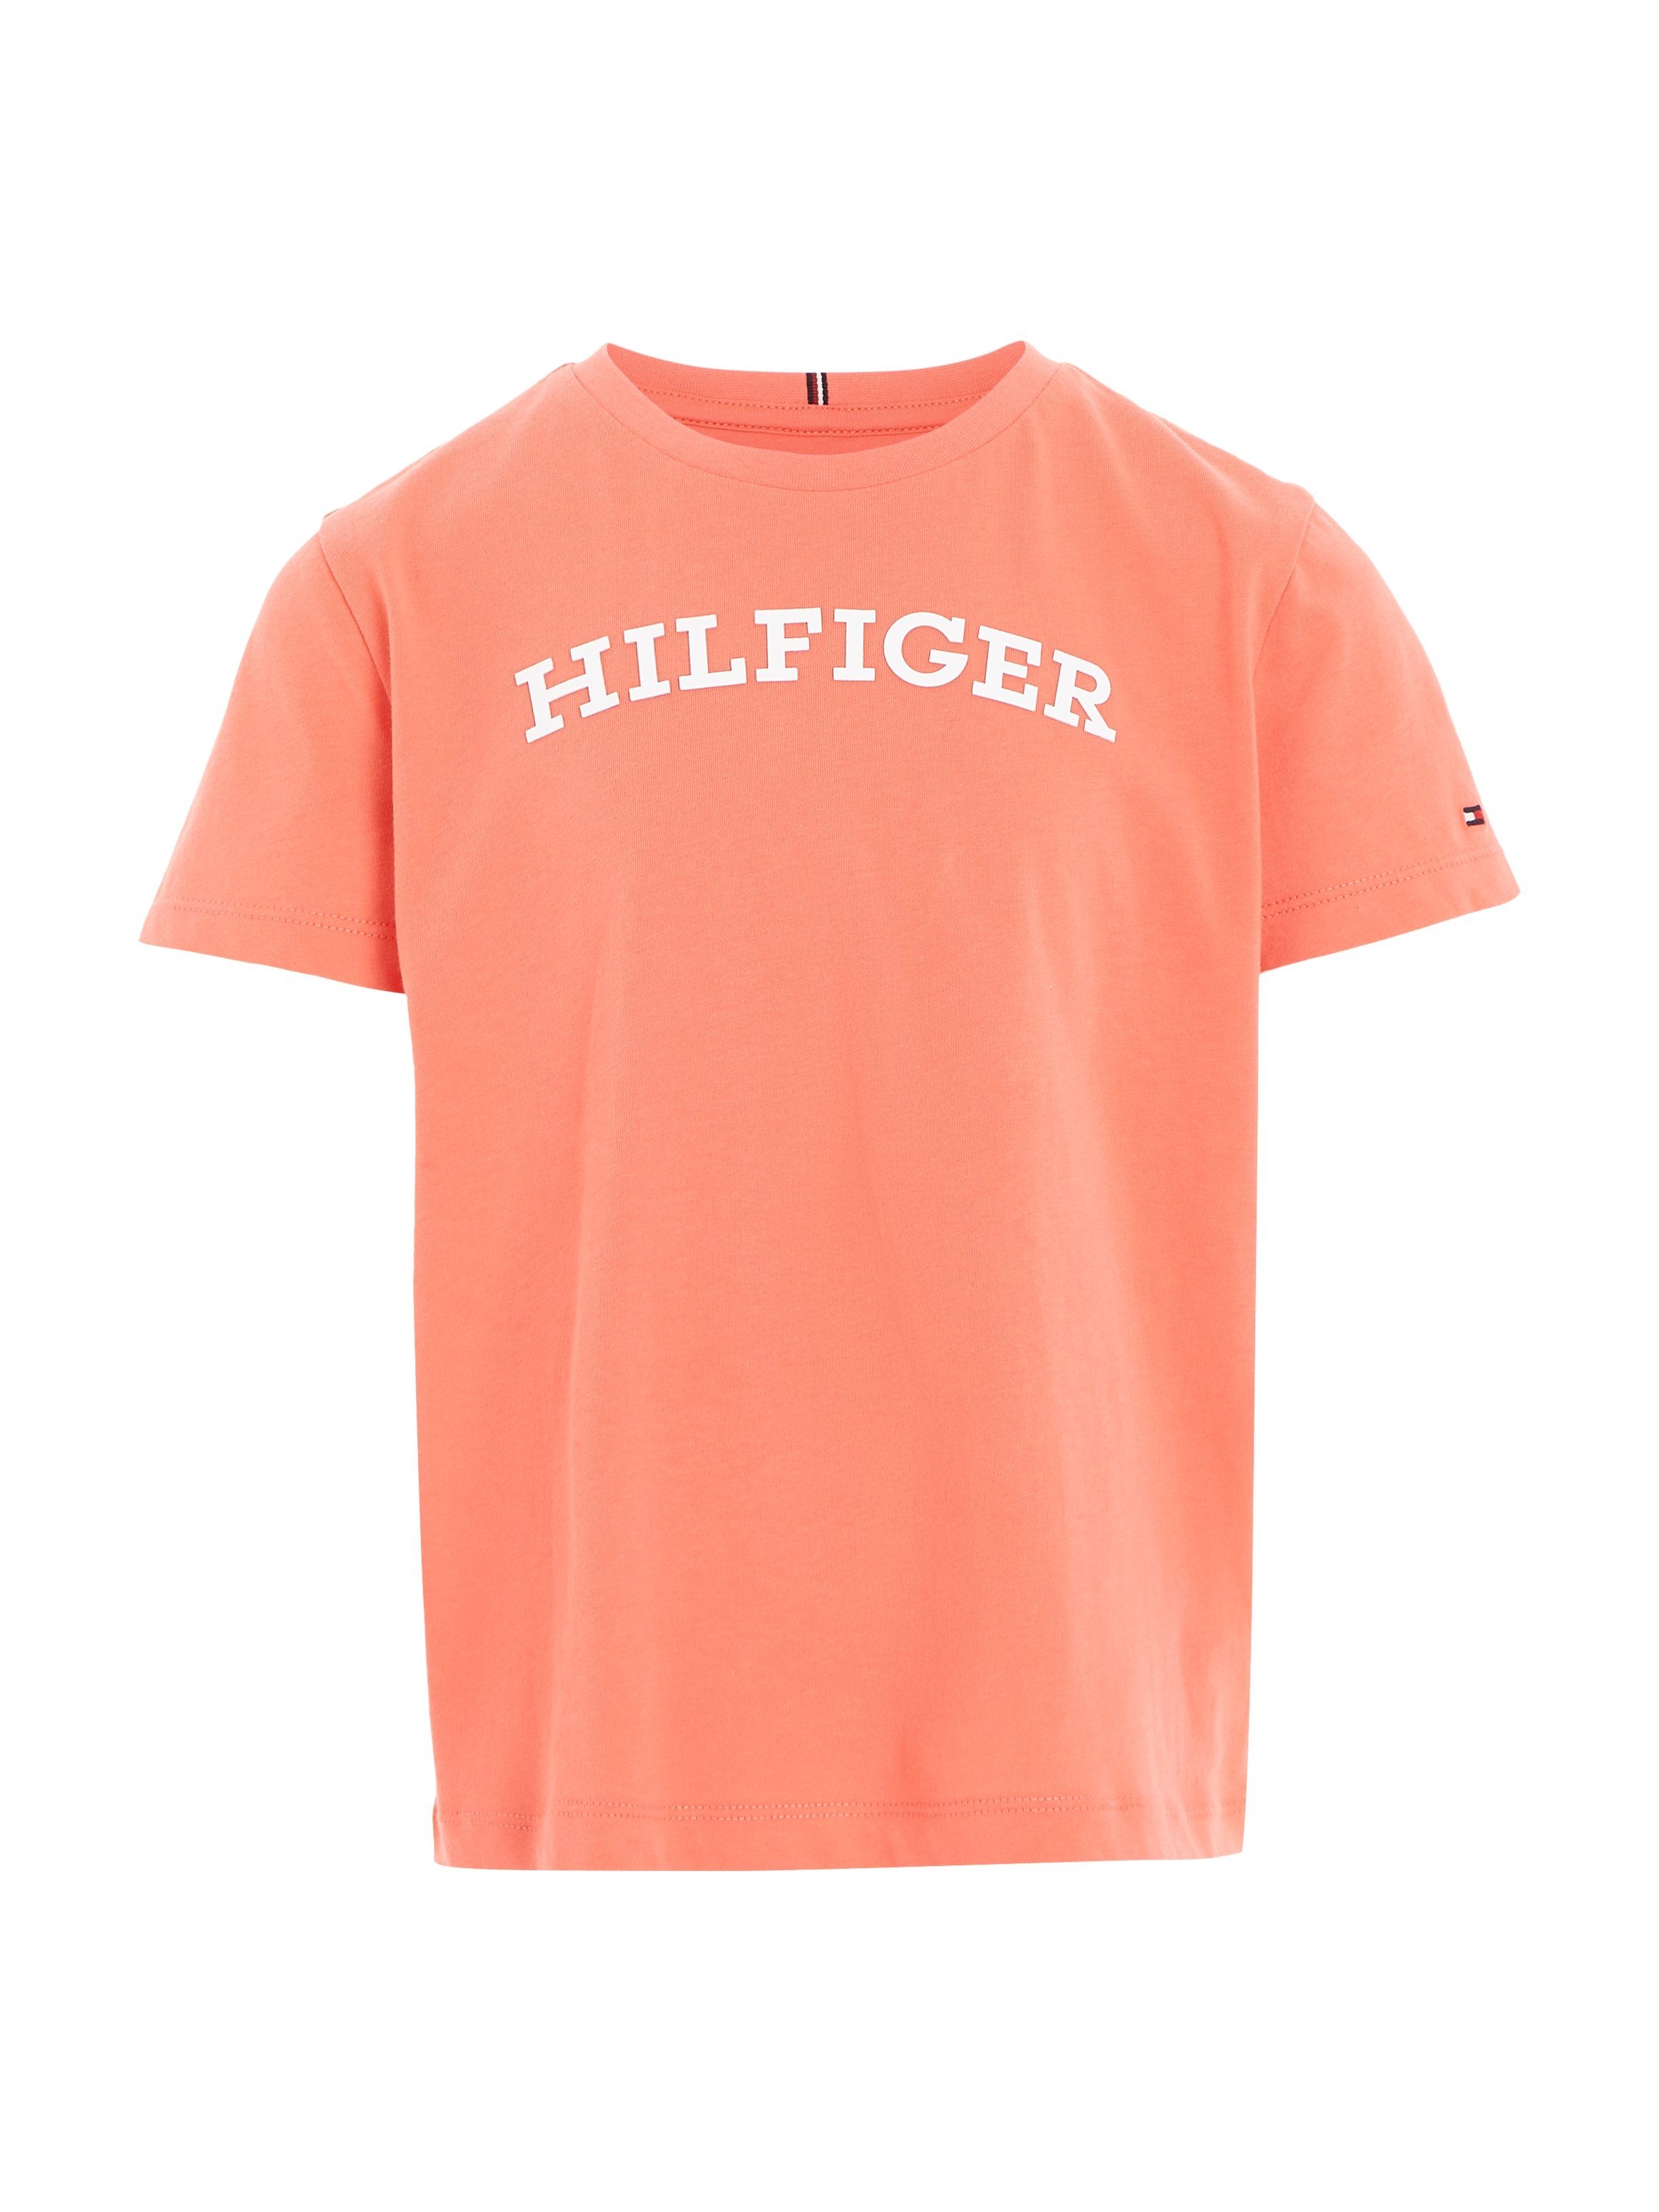 Tommy Hilfiger koralle T-Shirt modischem auf S/S Brust TEE mit Hilfiger-Logoschriftzug MONOTYPE der